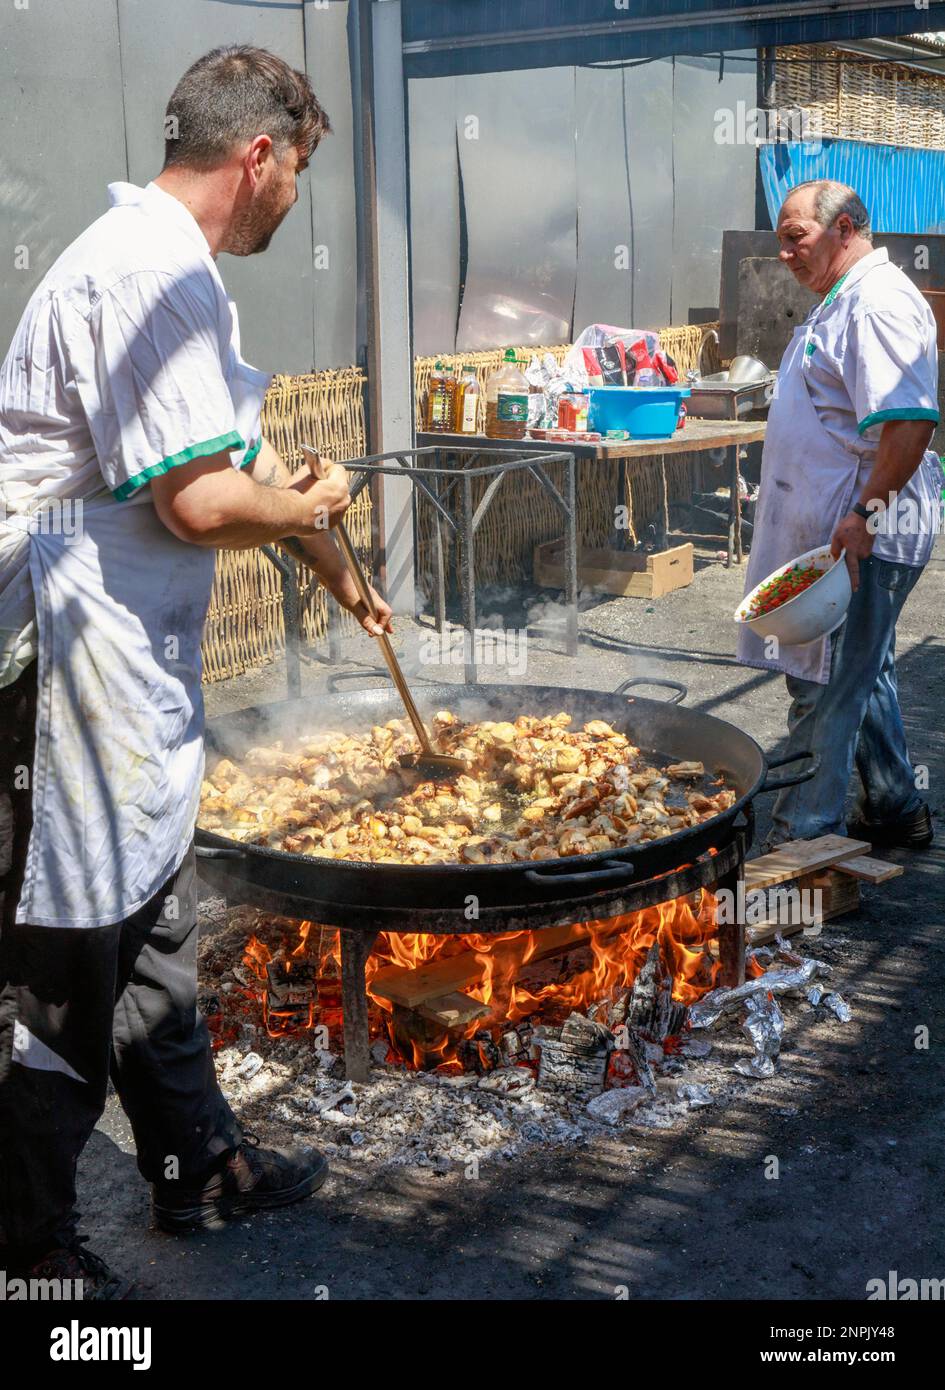 Nerja, Costa del Sol, Provinz Malaga, Andalusien, Südspanien. In Ayo's Beach Restaurant am Burriana Beach wird eine riesige Paella zubereitet. Eac Stockfoto